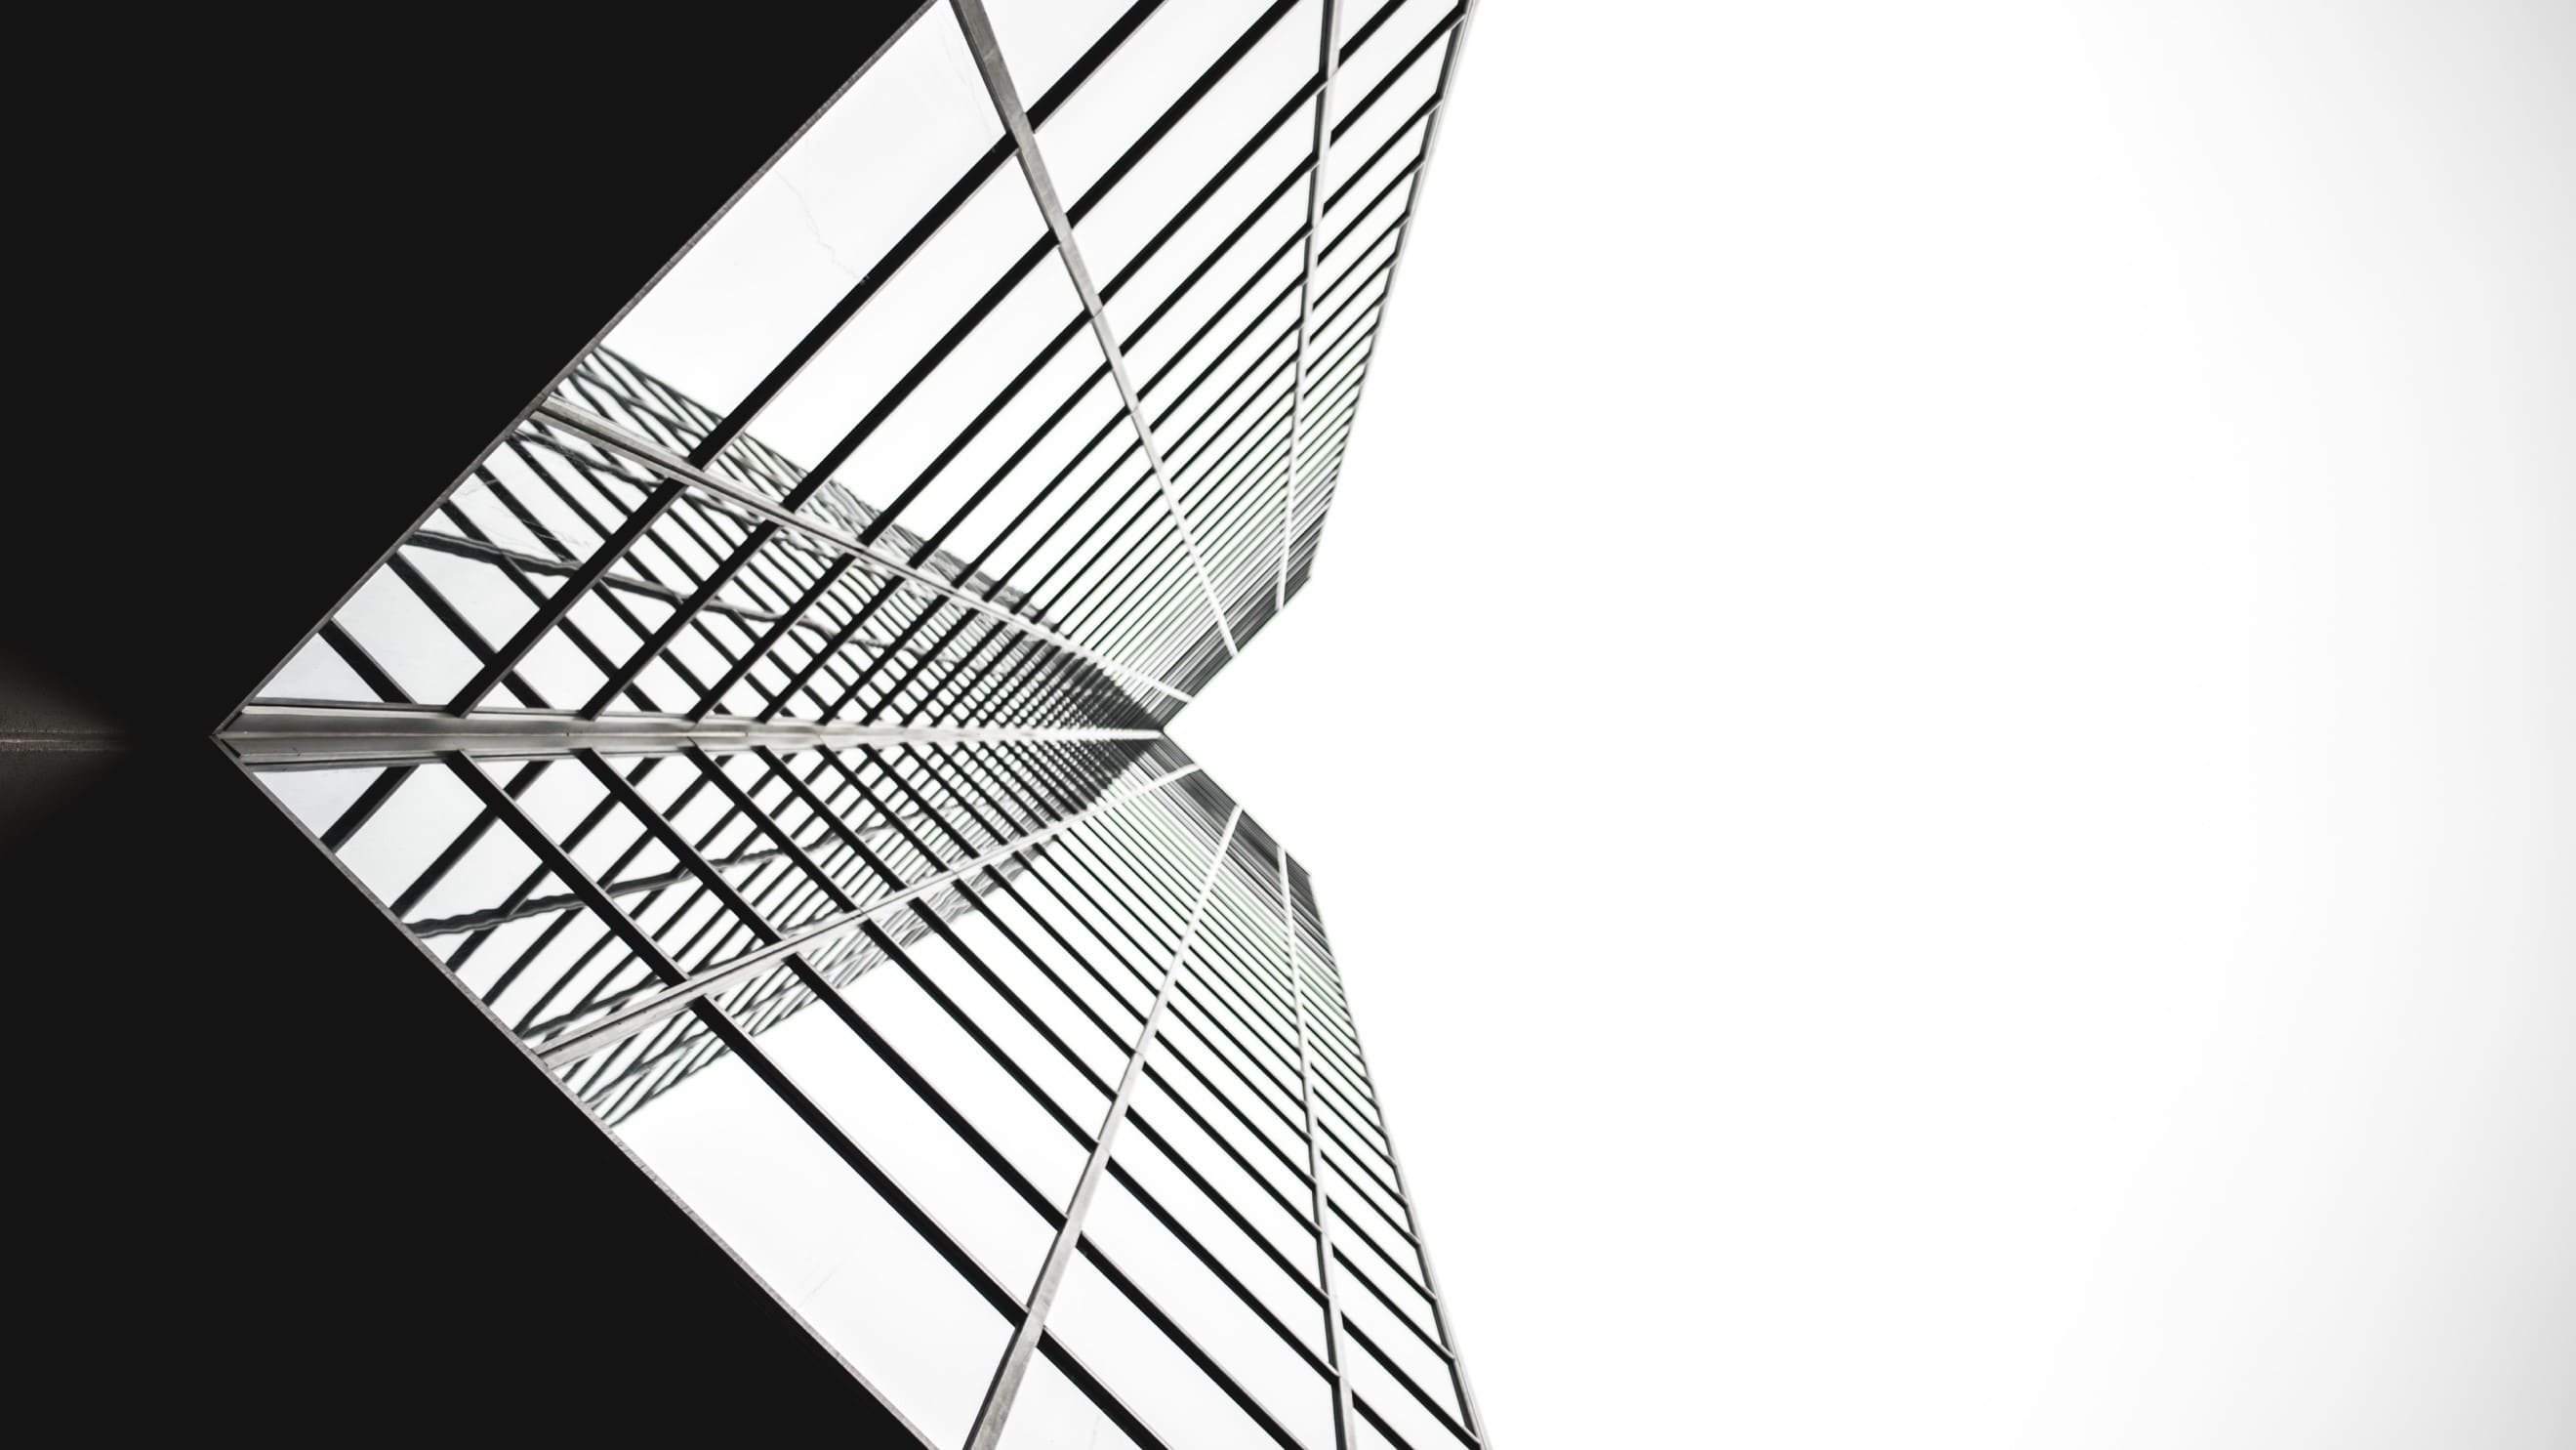 Imagen en blanco y negro de un edifcio visto desde abajo con espejos